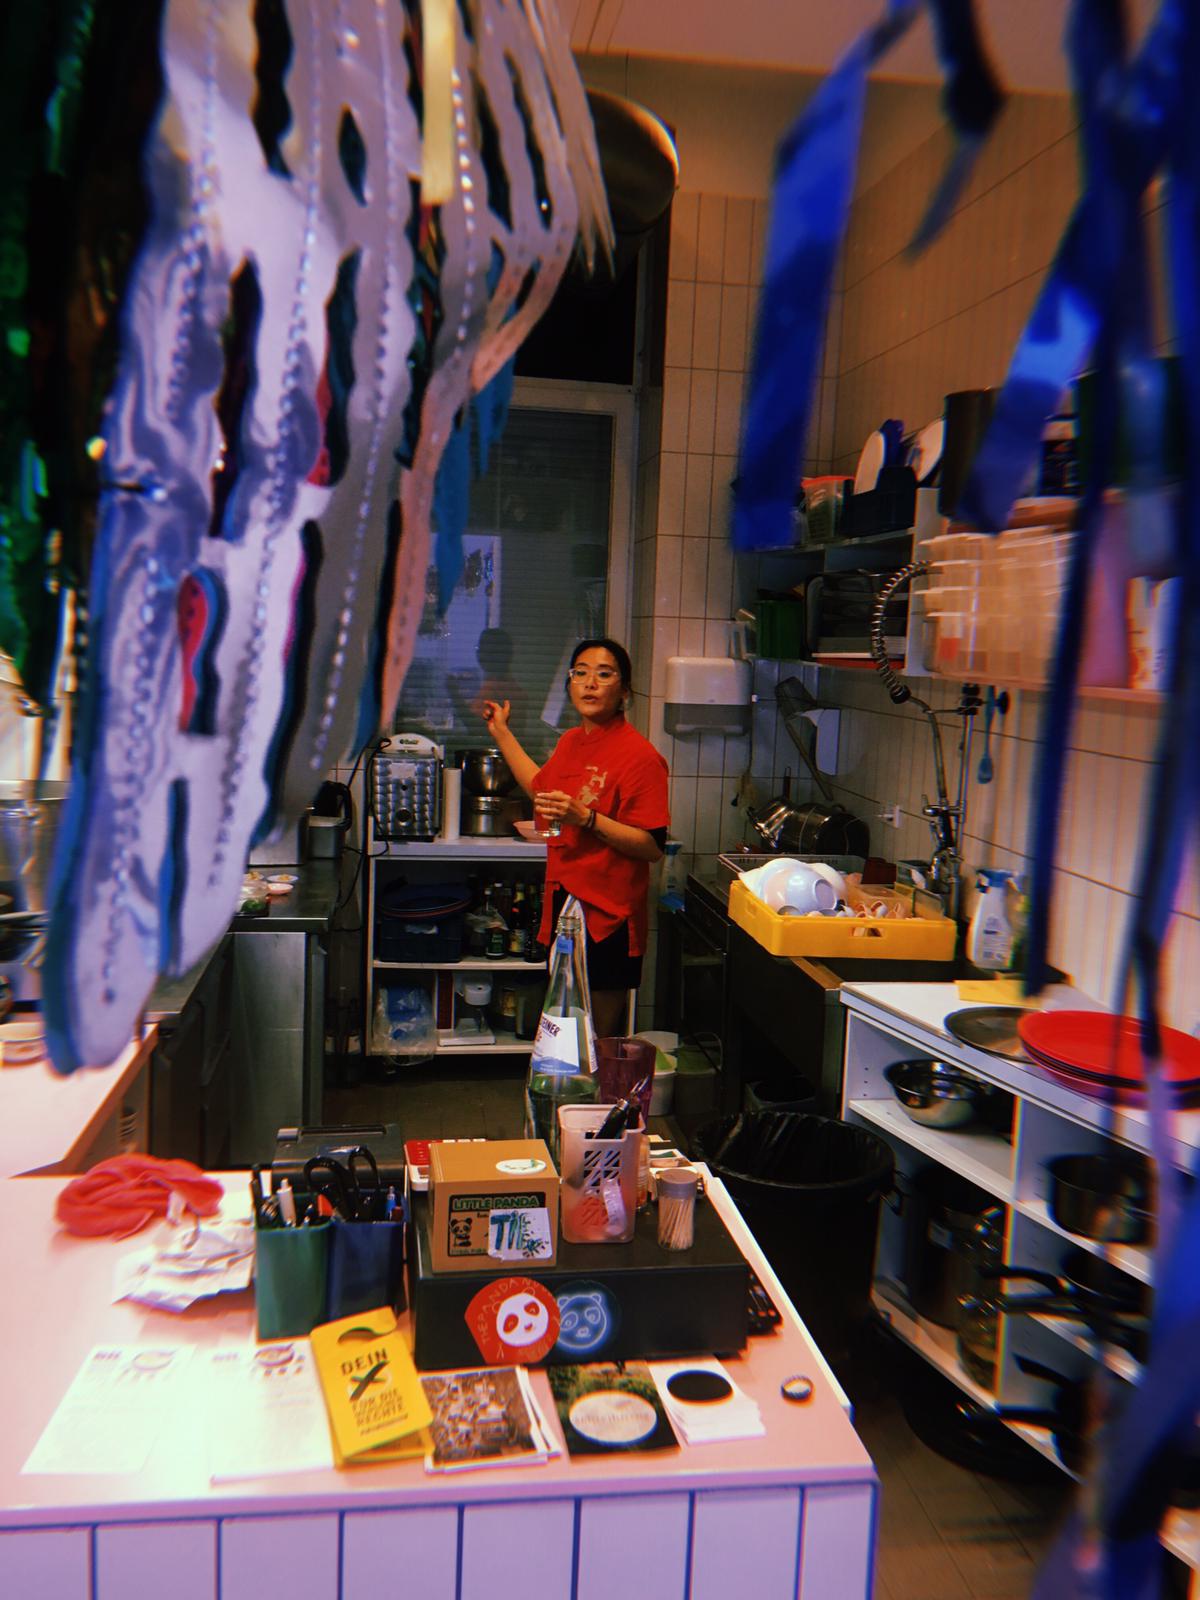 Vicky trägt ein rotes T-Shirt und steht in der Küche von dem Pandanoodle Laden. Im Vordergrund hängen bunte Girlanden. Das Foto wurde während des Rice is Life Events am 19.05.2019 aufgenommen.